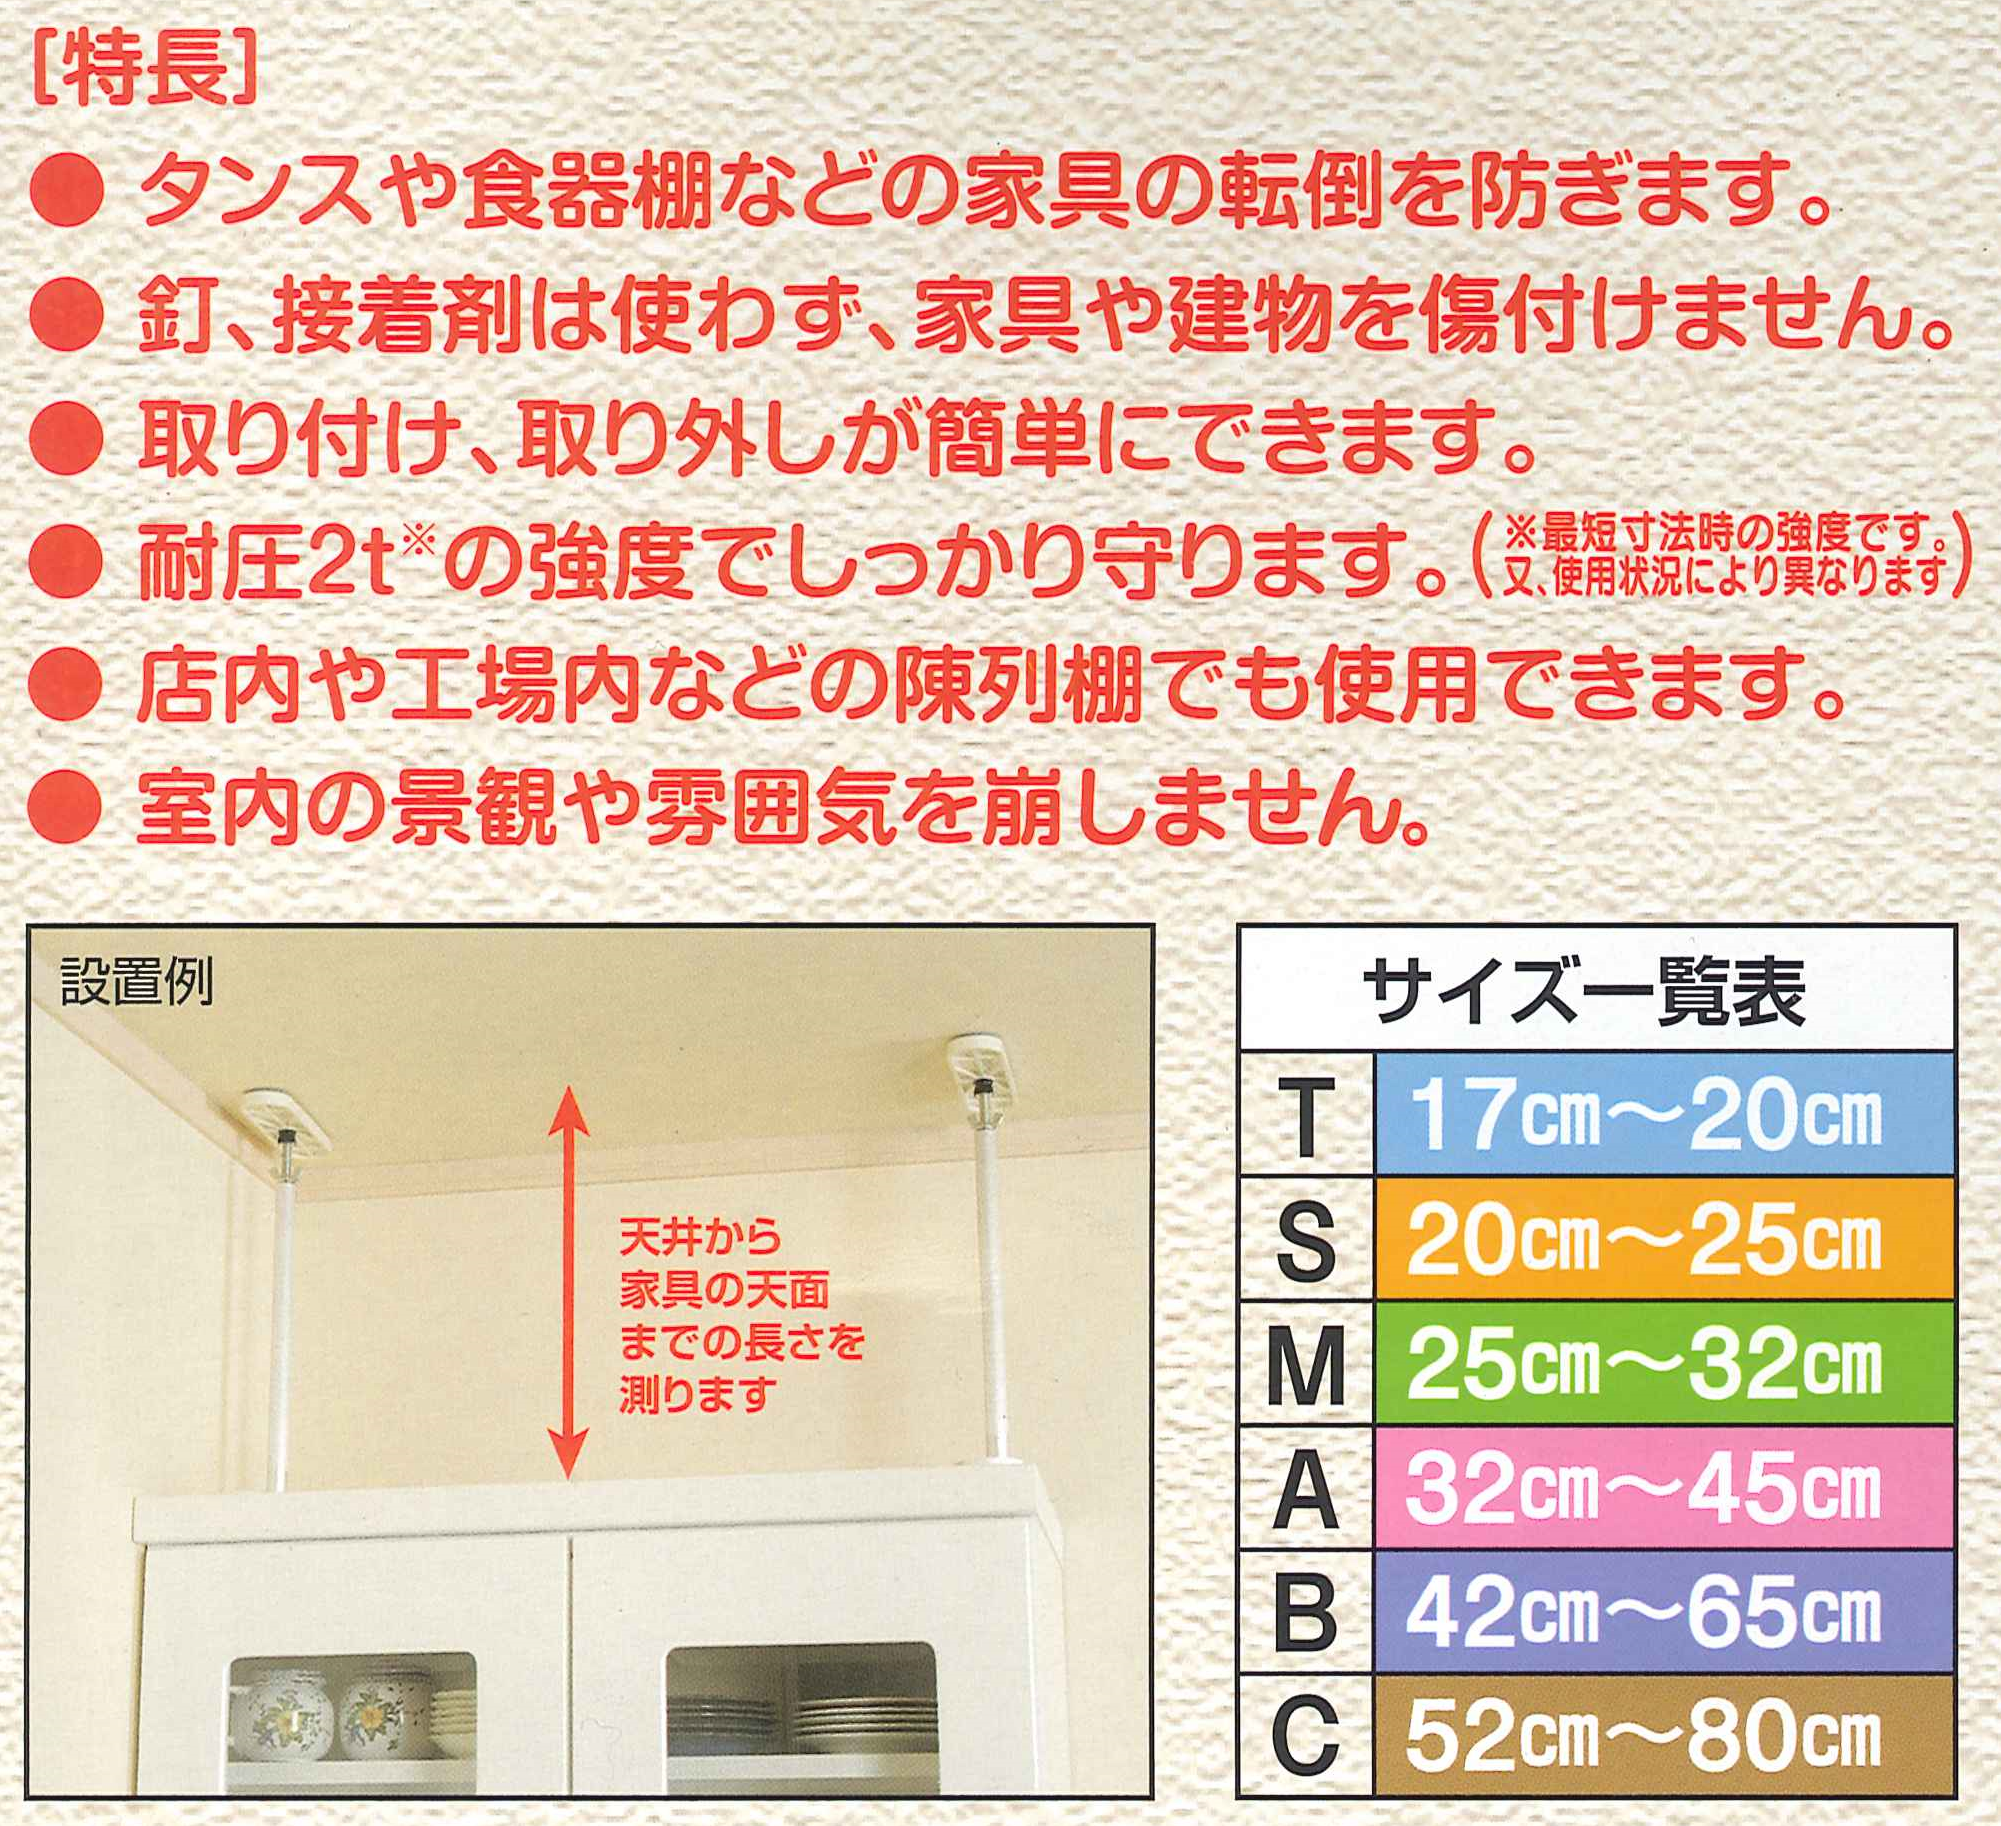 【値下】【耐震家具突っ張り棒】ふんばりくんSuper Bタイプ(42-65cm)